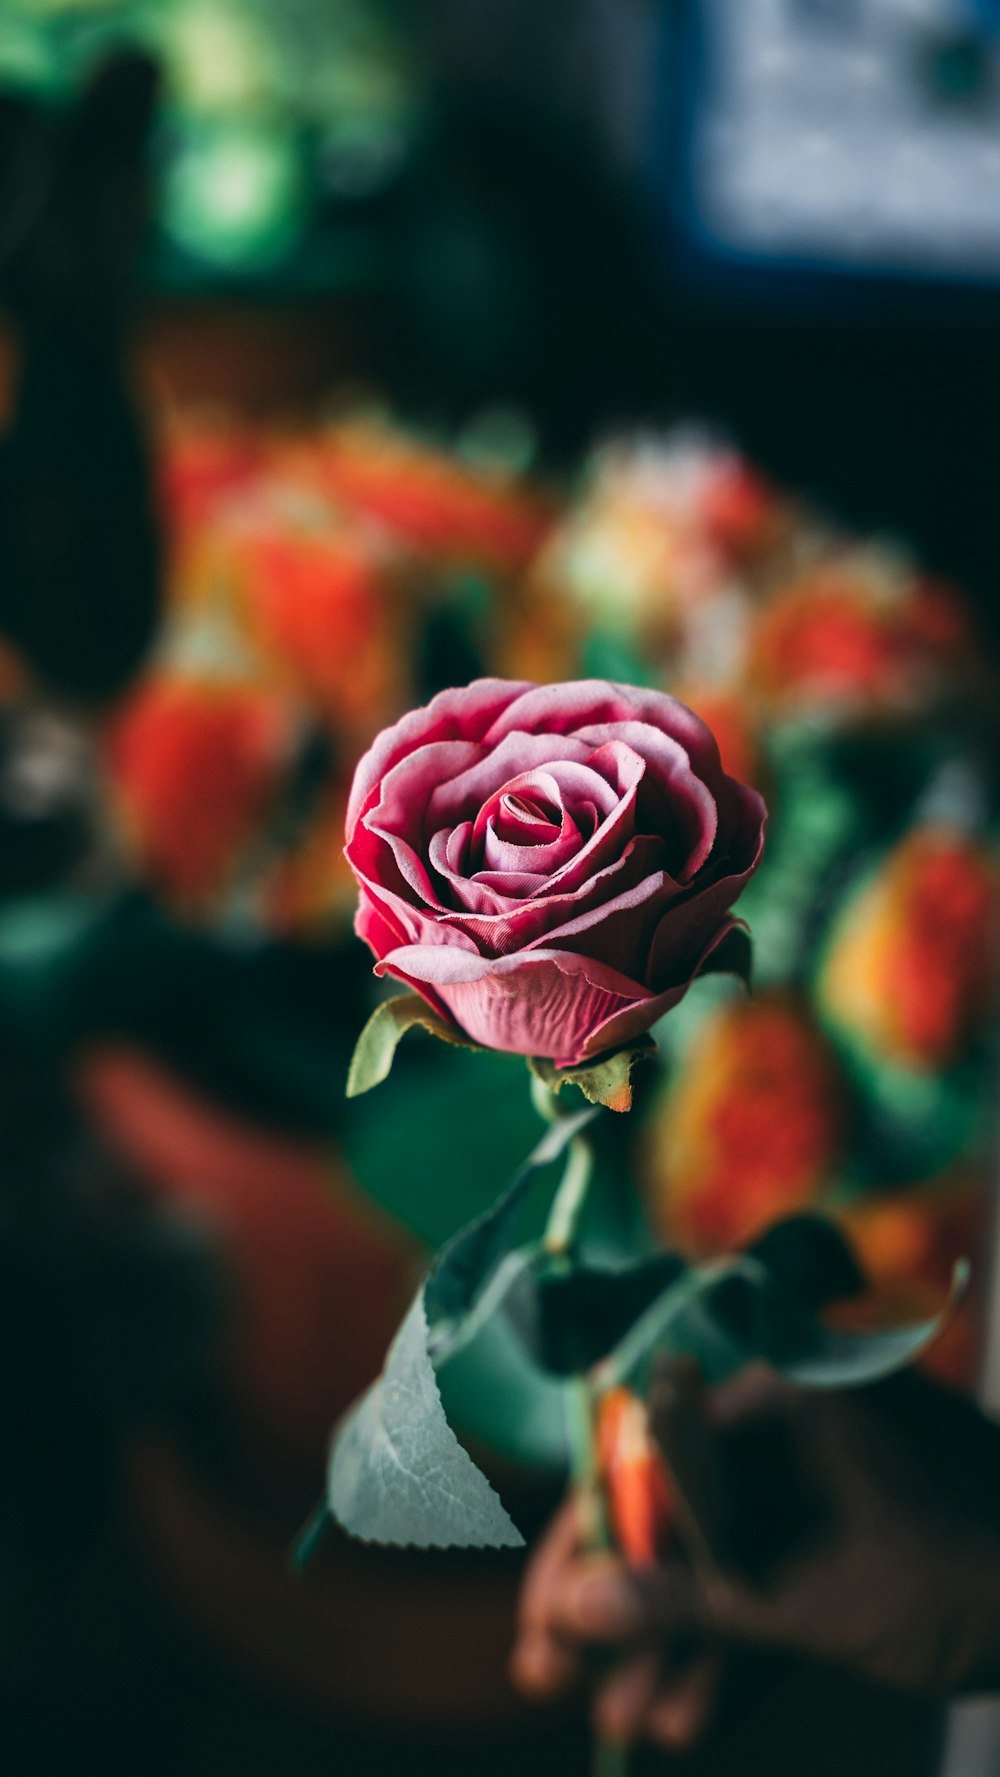 rosa vermelha em flor close up foto